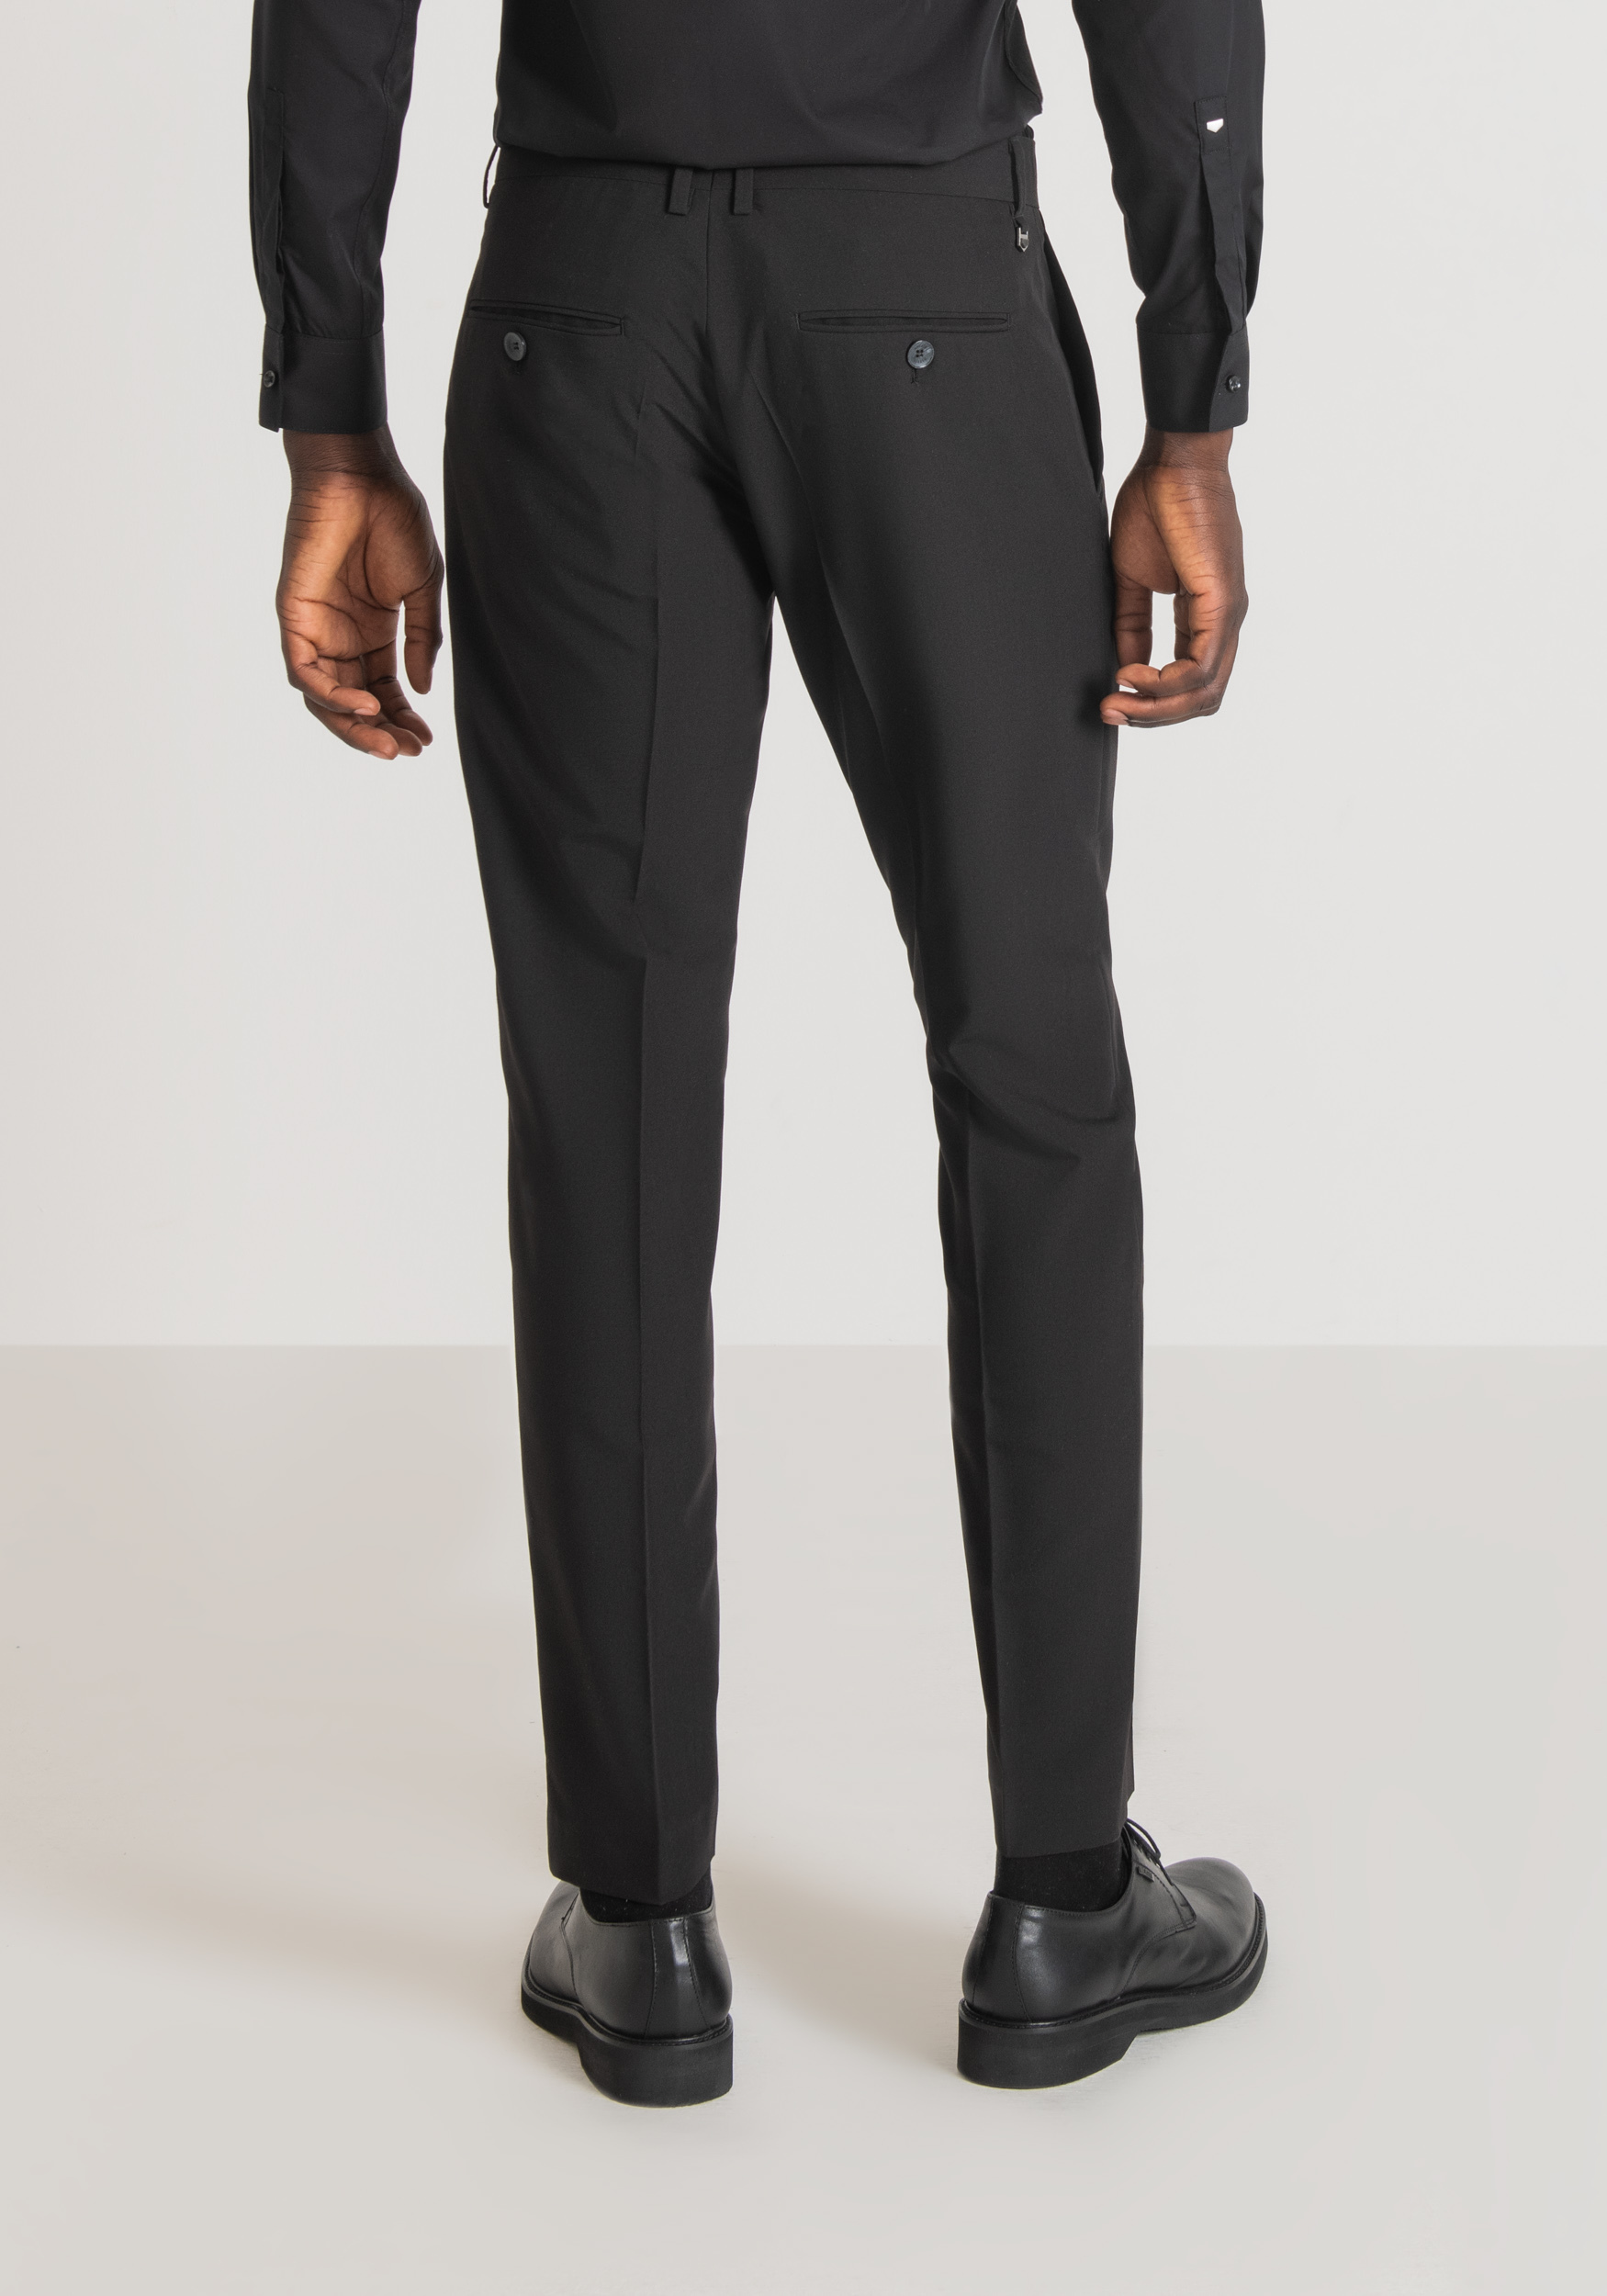 Antony Morato Pantalon Slim Fit Bonnie En Viscose Melangee Elastique Noir | Homme Pantalons